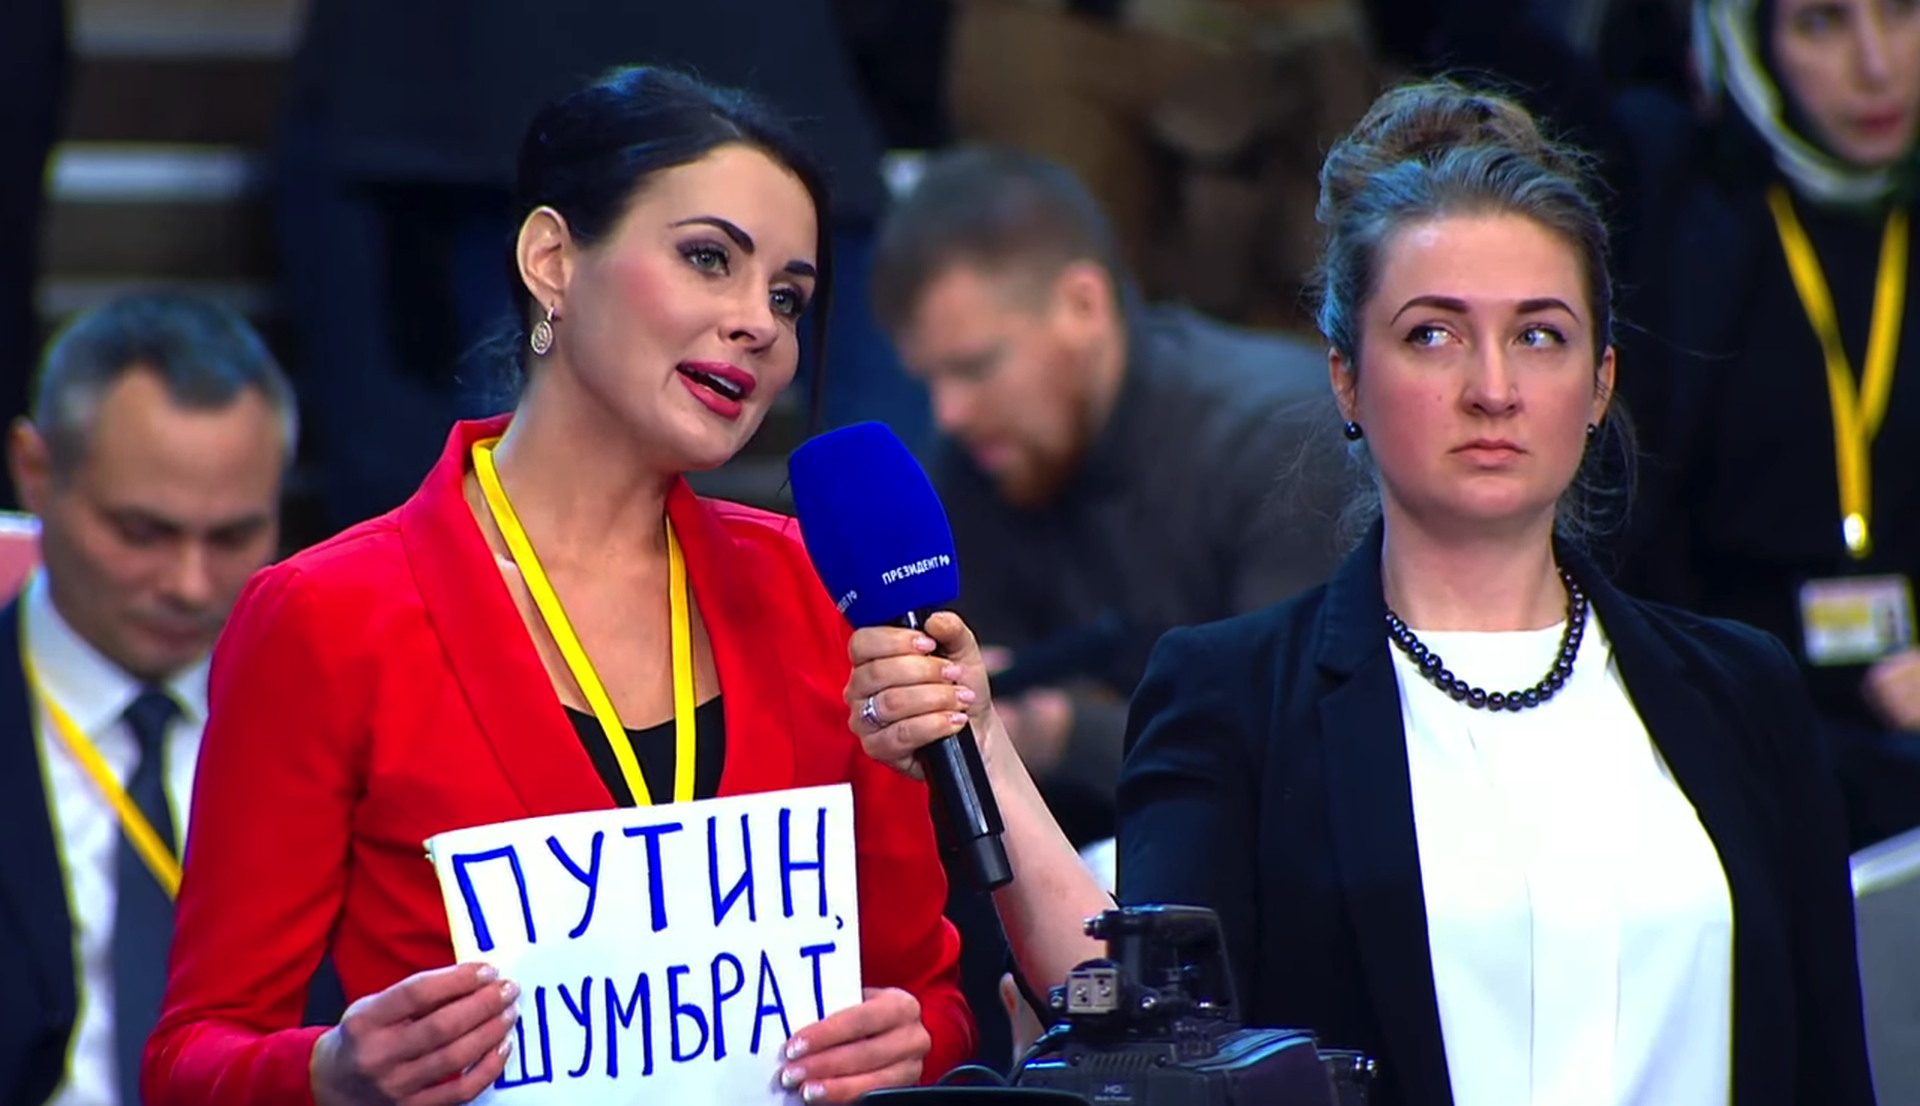 «Путин, шумбрат»: президента рассмешила фраза на табличке журналистки из Мордовии